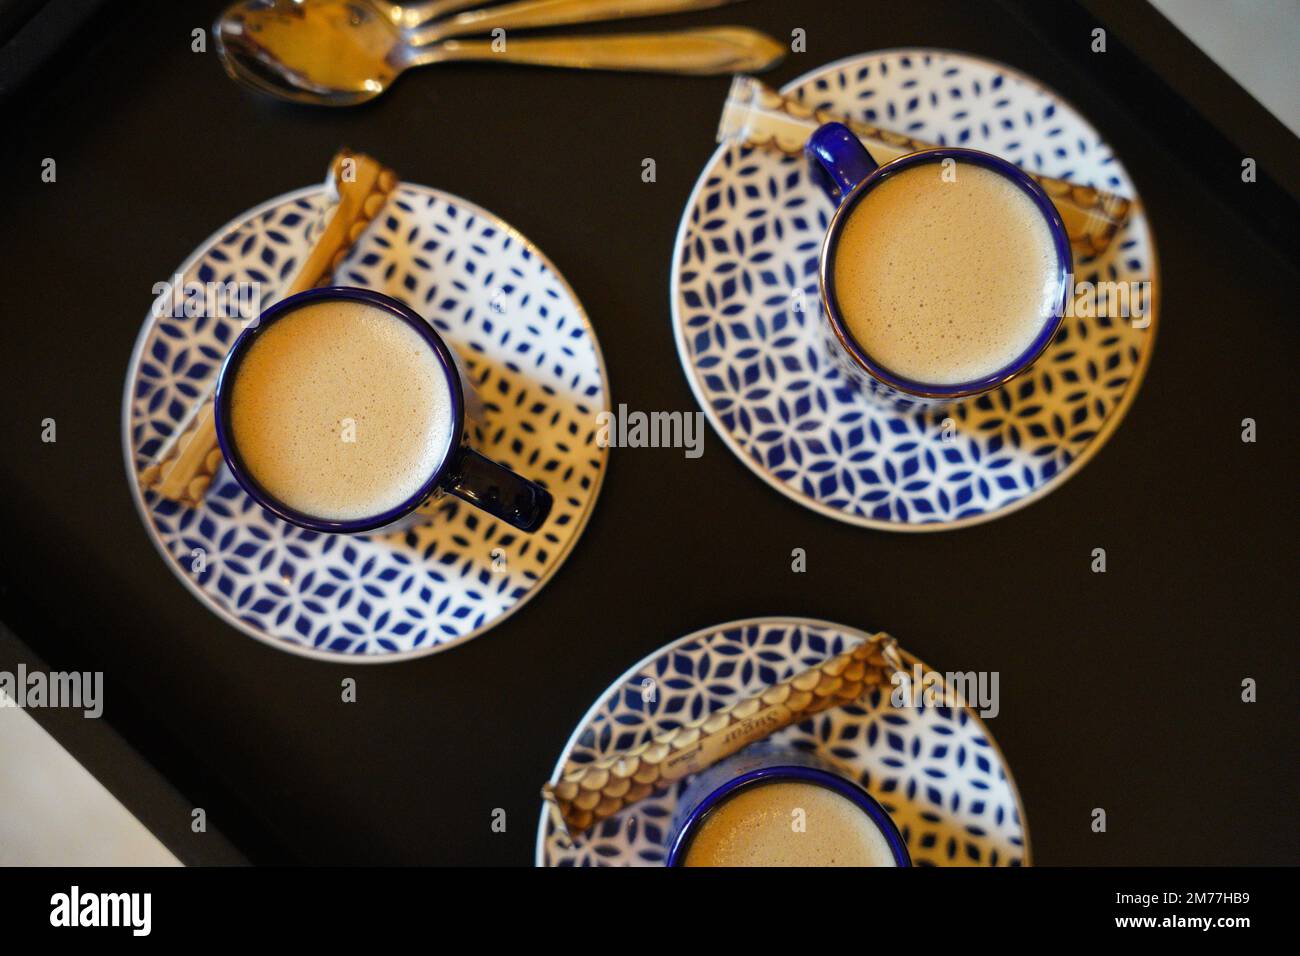 Türkischer oder französischer Kaffee mit Schaumgerichten und traditionellem Servierset. Blau-weißes Keramikkaffee-Set Stockfoto